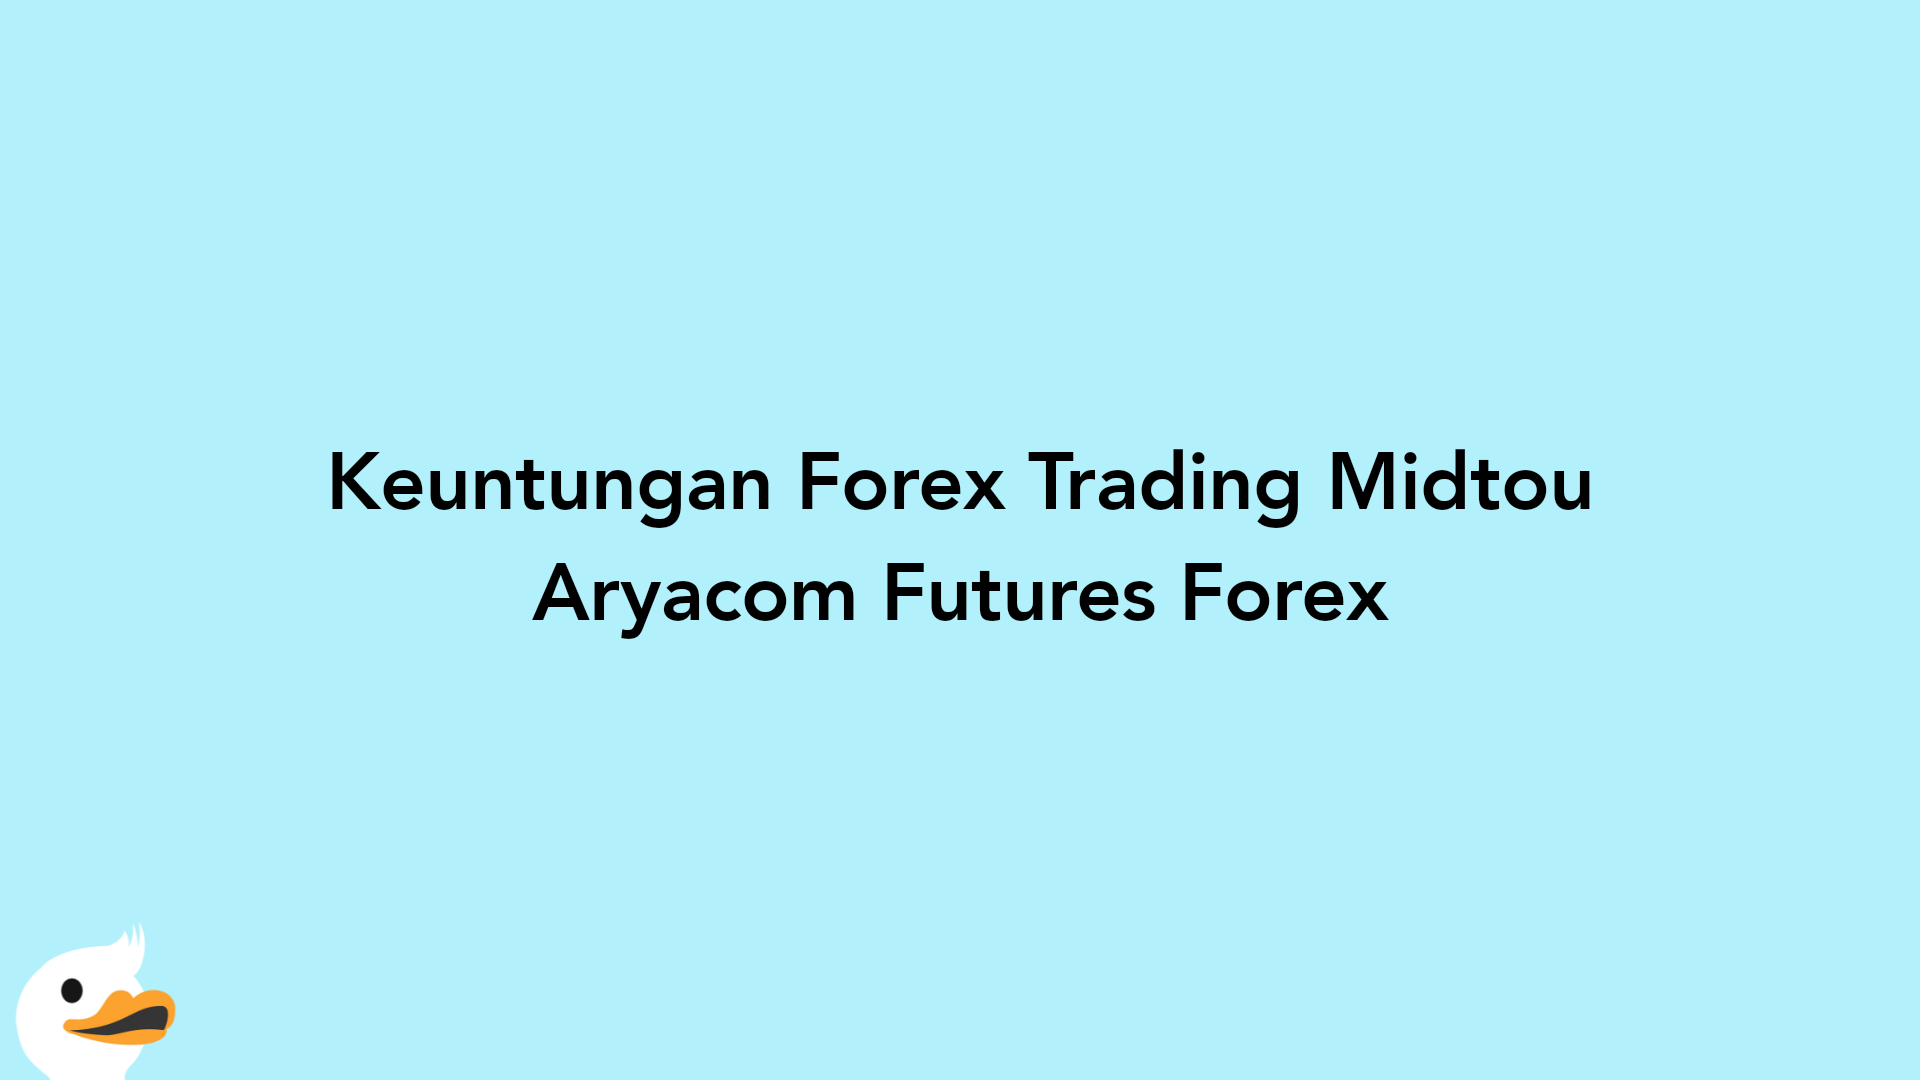 Keuntungan Forex Trading Midtou Aryacom Futures Forex